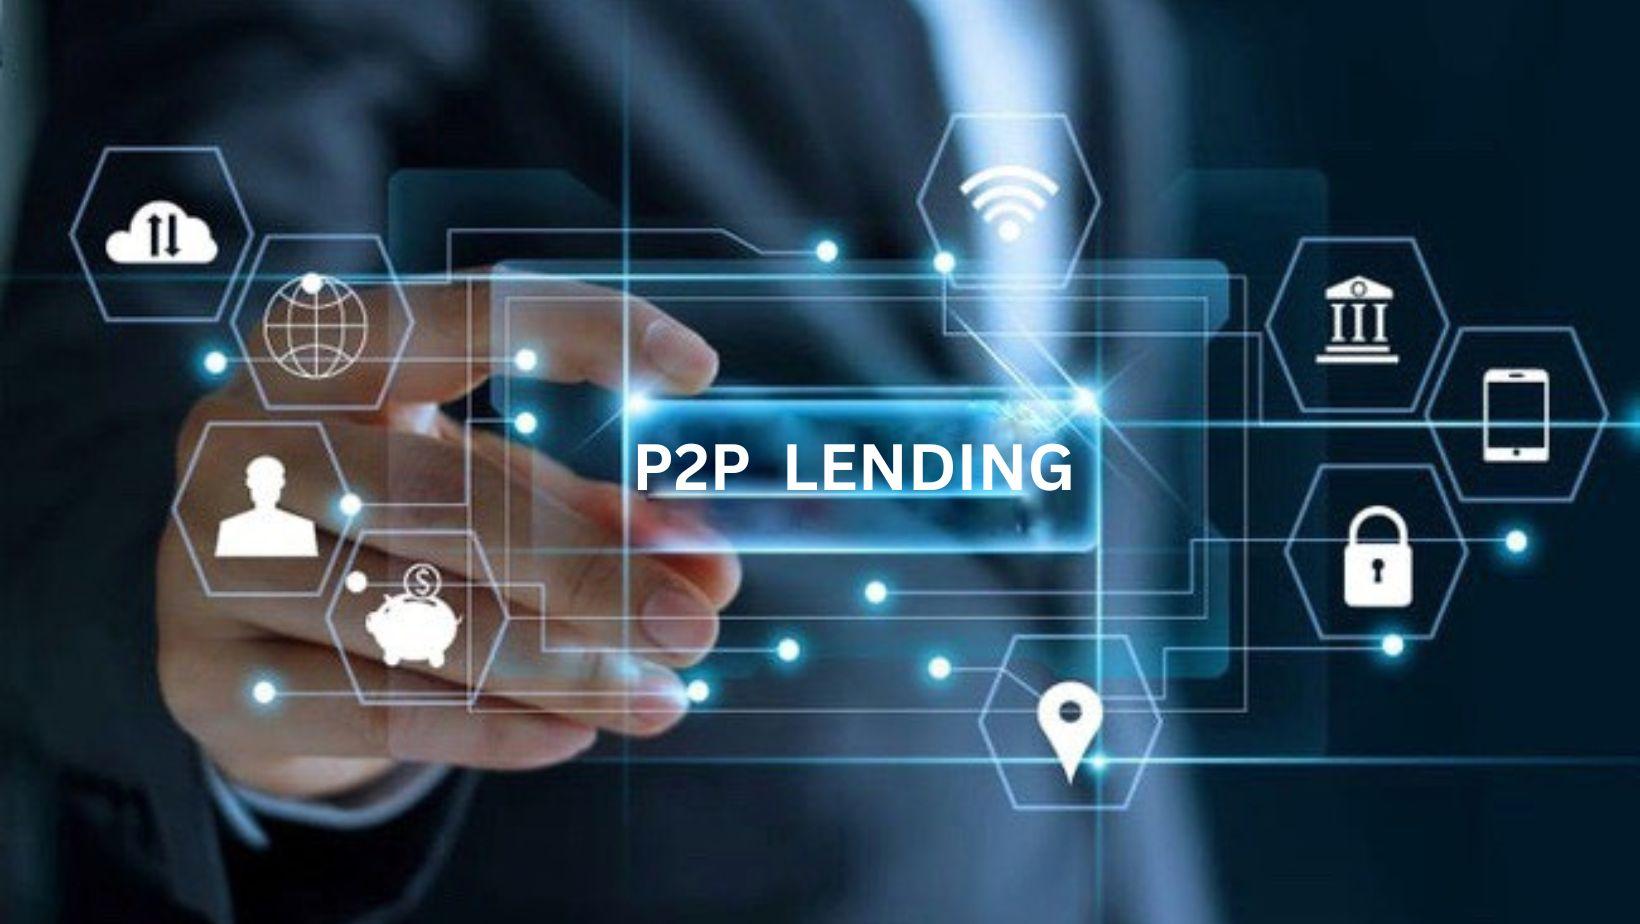 Giải pháp huy động vốn P2P Lending (cho vay ngang hàng) được doanh nghiệp vừa và nhỏ tìm đến và xem là mô hình huy động vốn kết nối cộng đồng nhà đầu tư trên nền tảng công nghệ. (Ảnh minh họa)